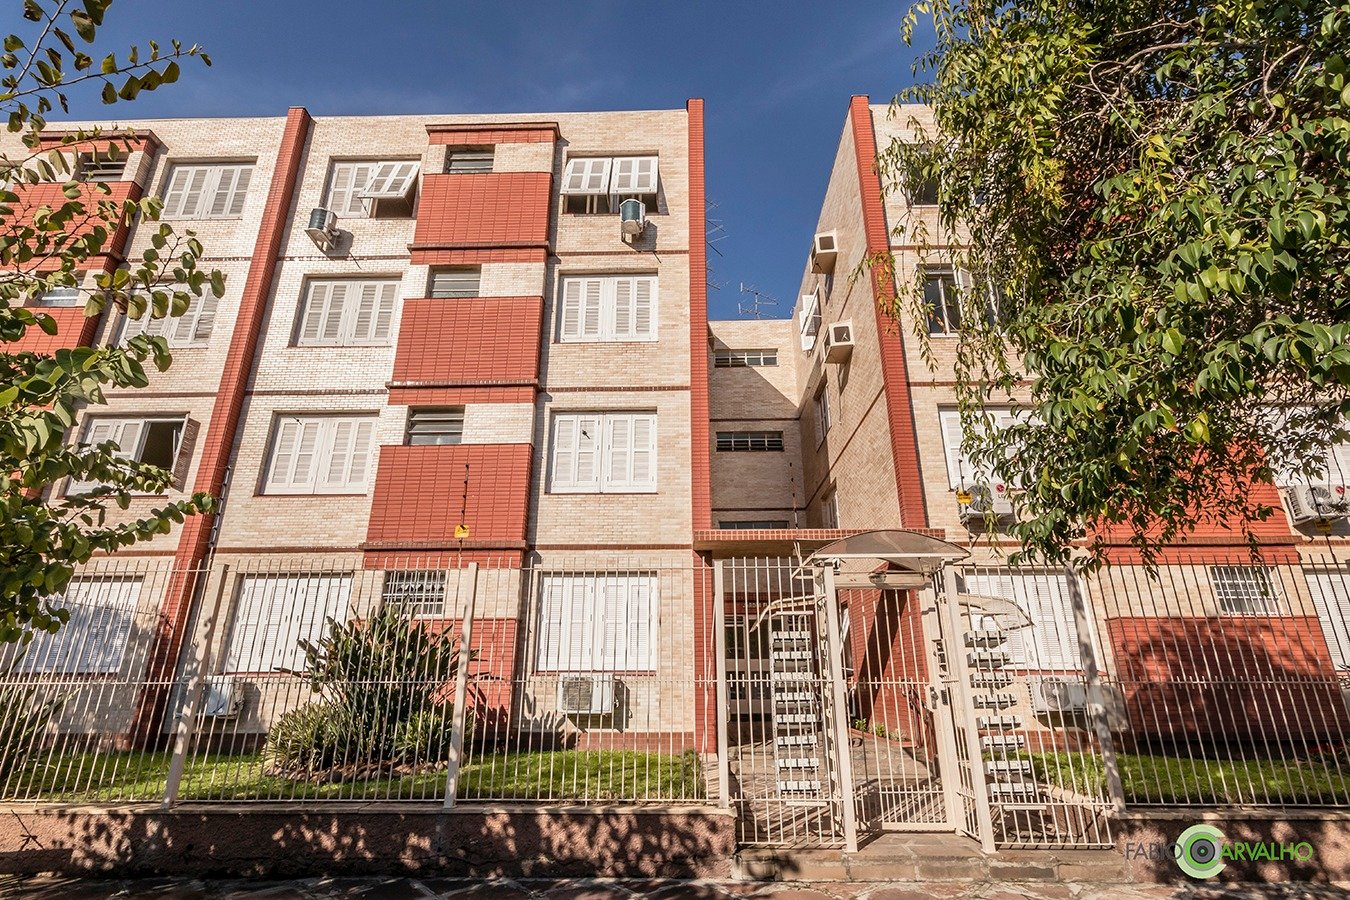 Apartamento com 72m², 3 dormitórios no bairro São João em Porto Alegre para Comprar